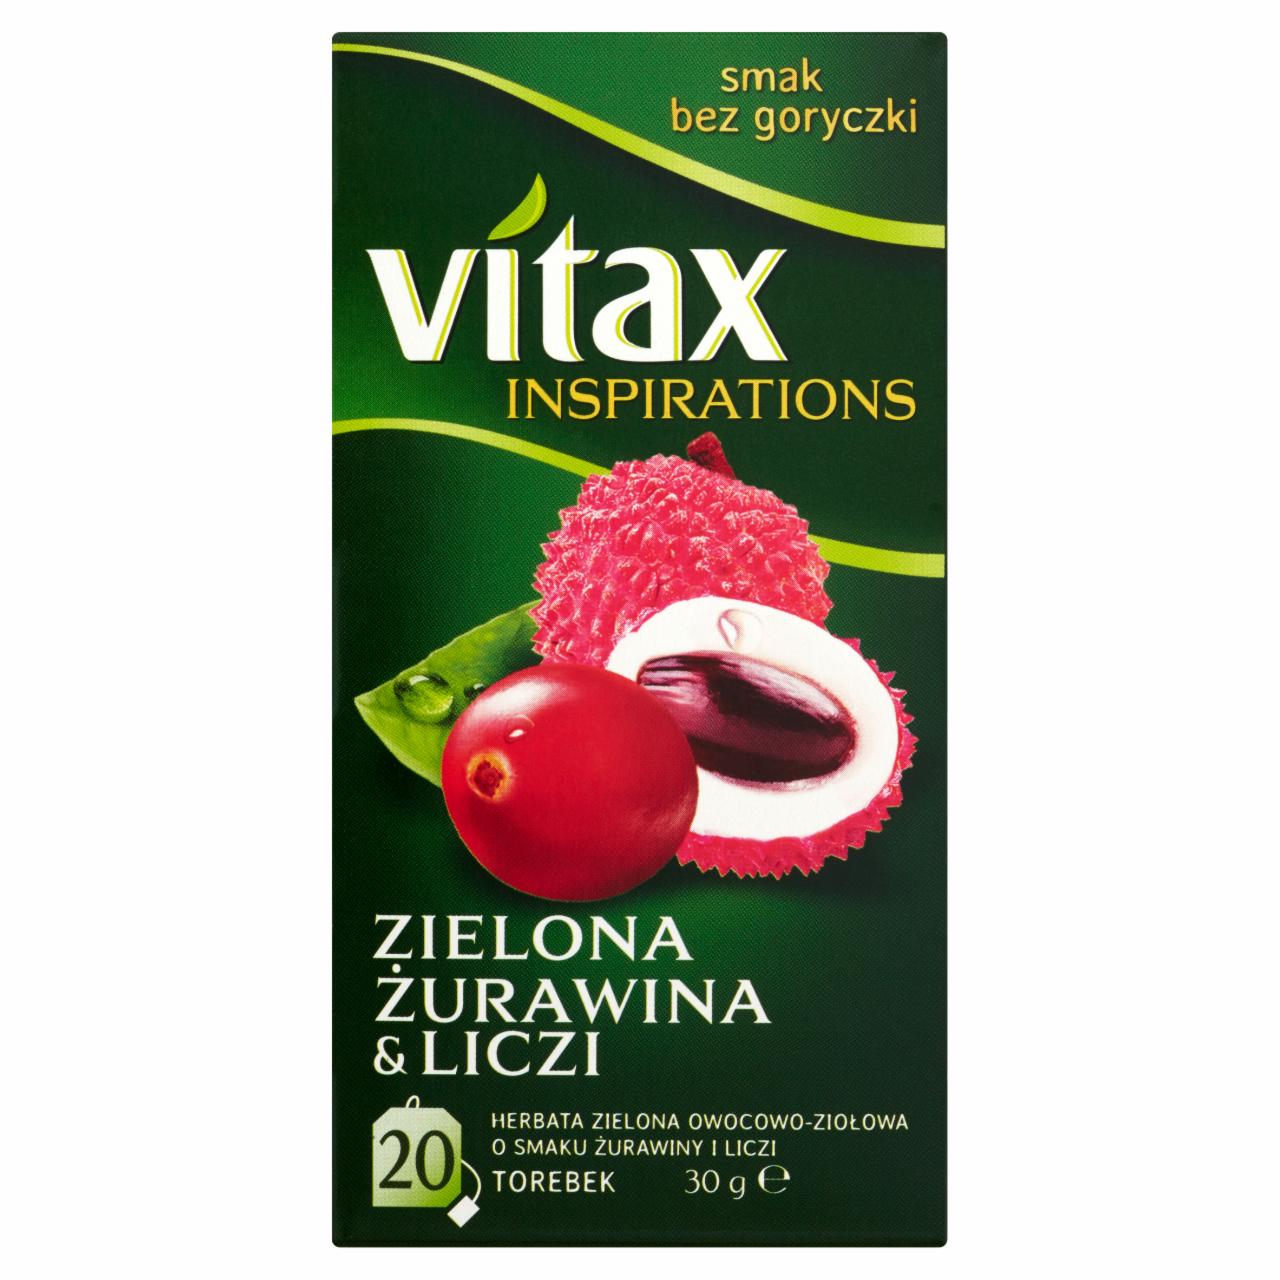 Zdjęcia - Vitax Inspirations Zielona Żurawina & Liczi Herbata zielona owocowo-ziołowa 30 g (20 torebek)